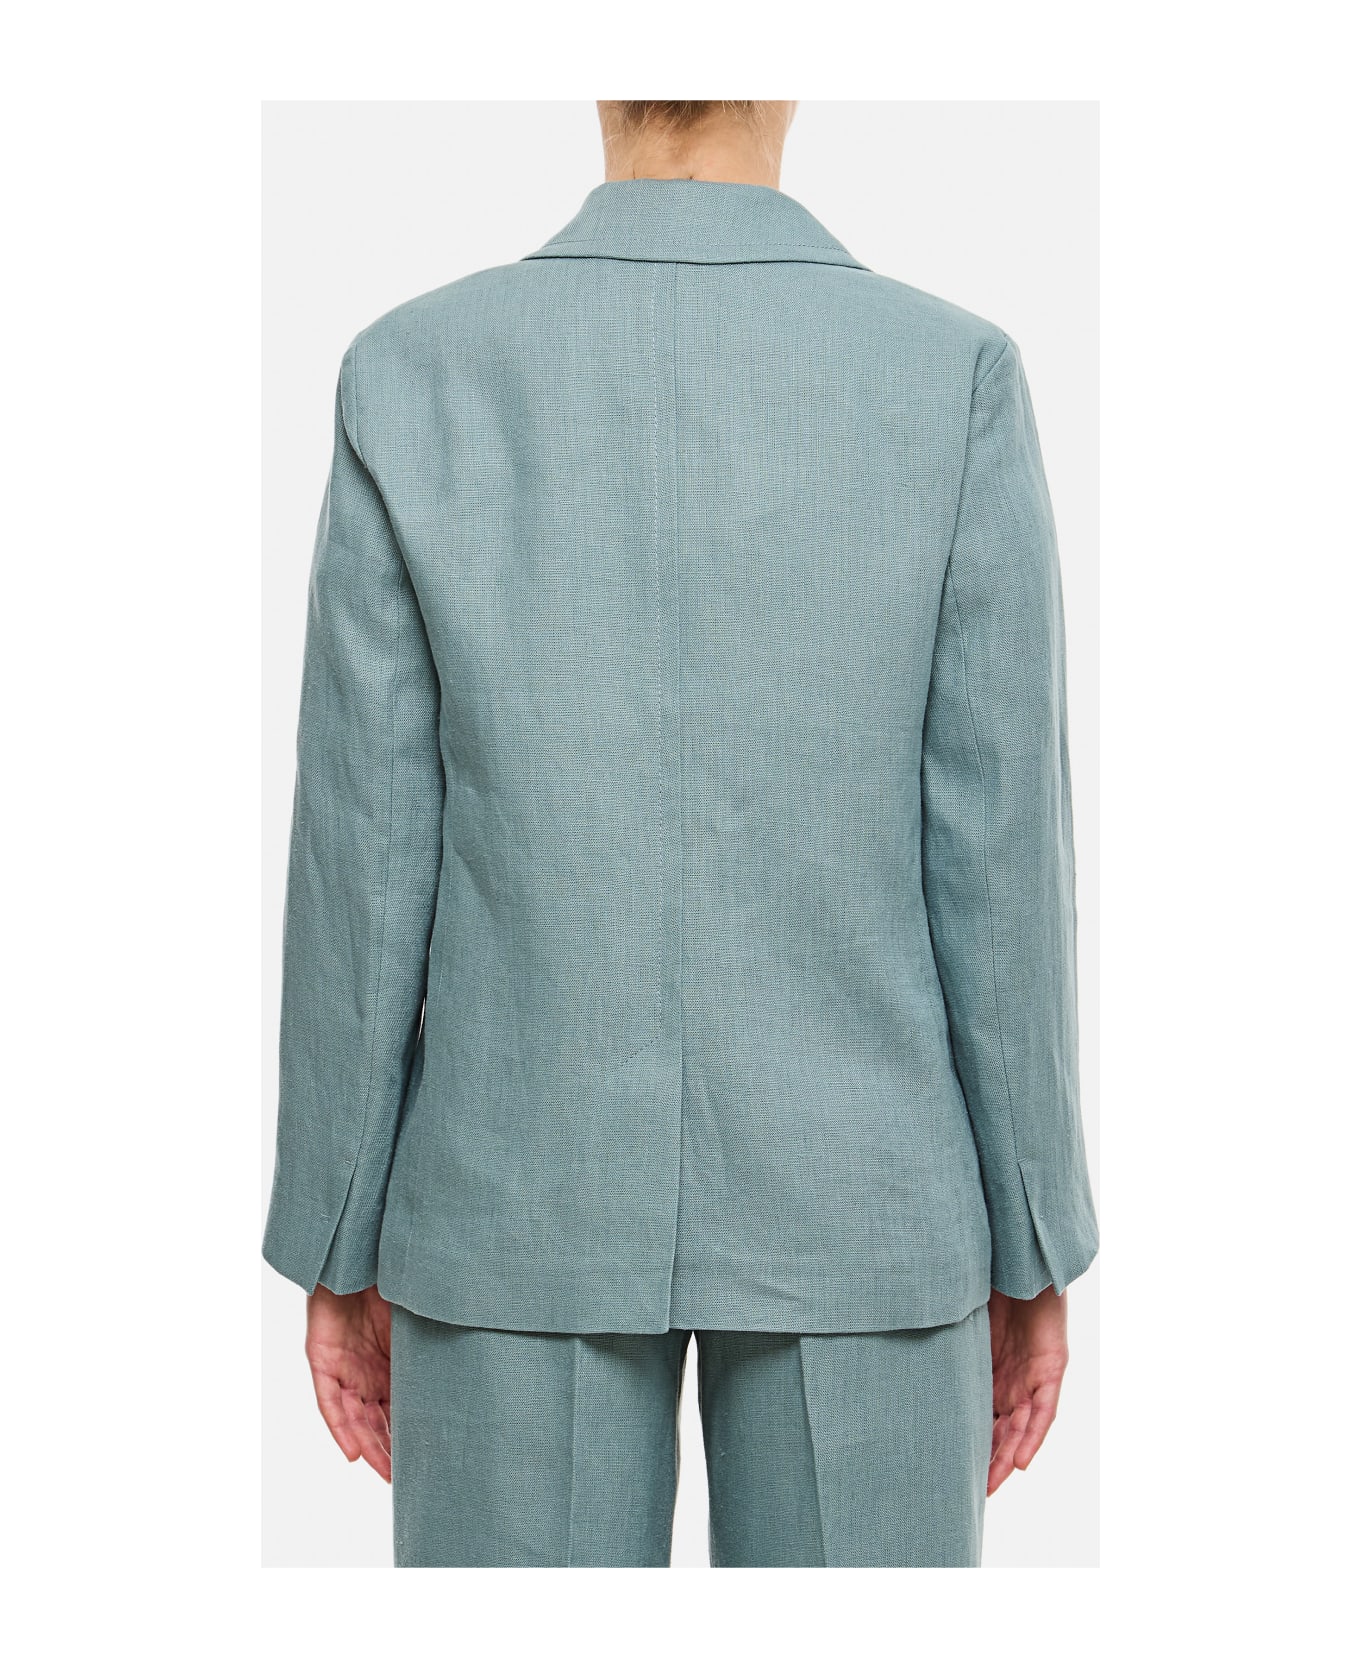 'S Max Mara Socrates Linen Jacket - Clear Blue